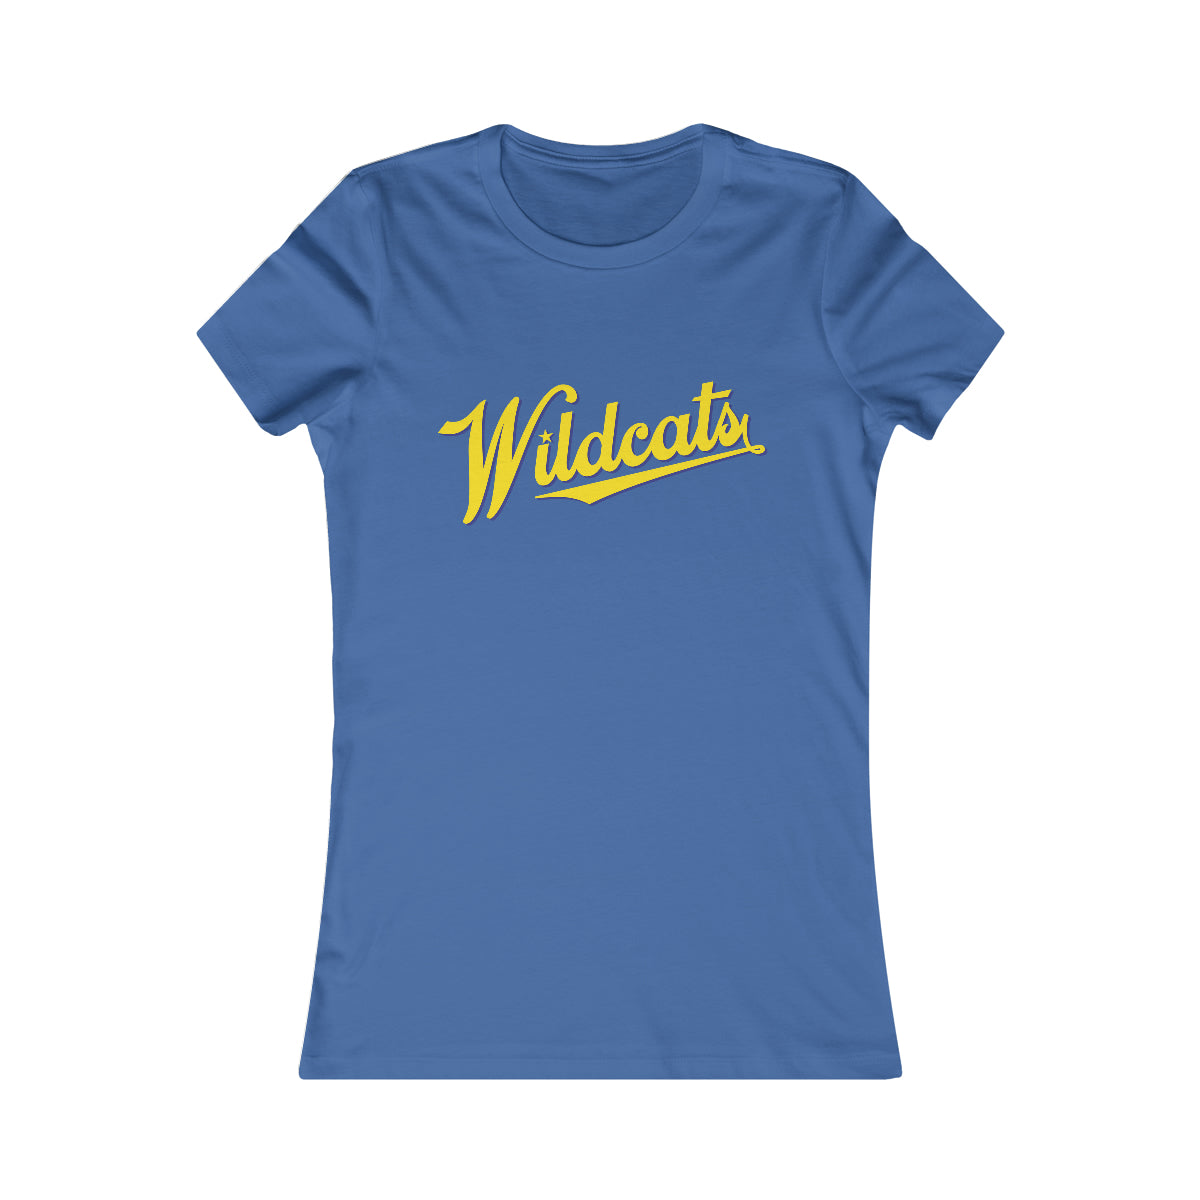 Wildcats star Women's Favorite Tee